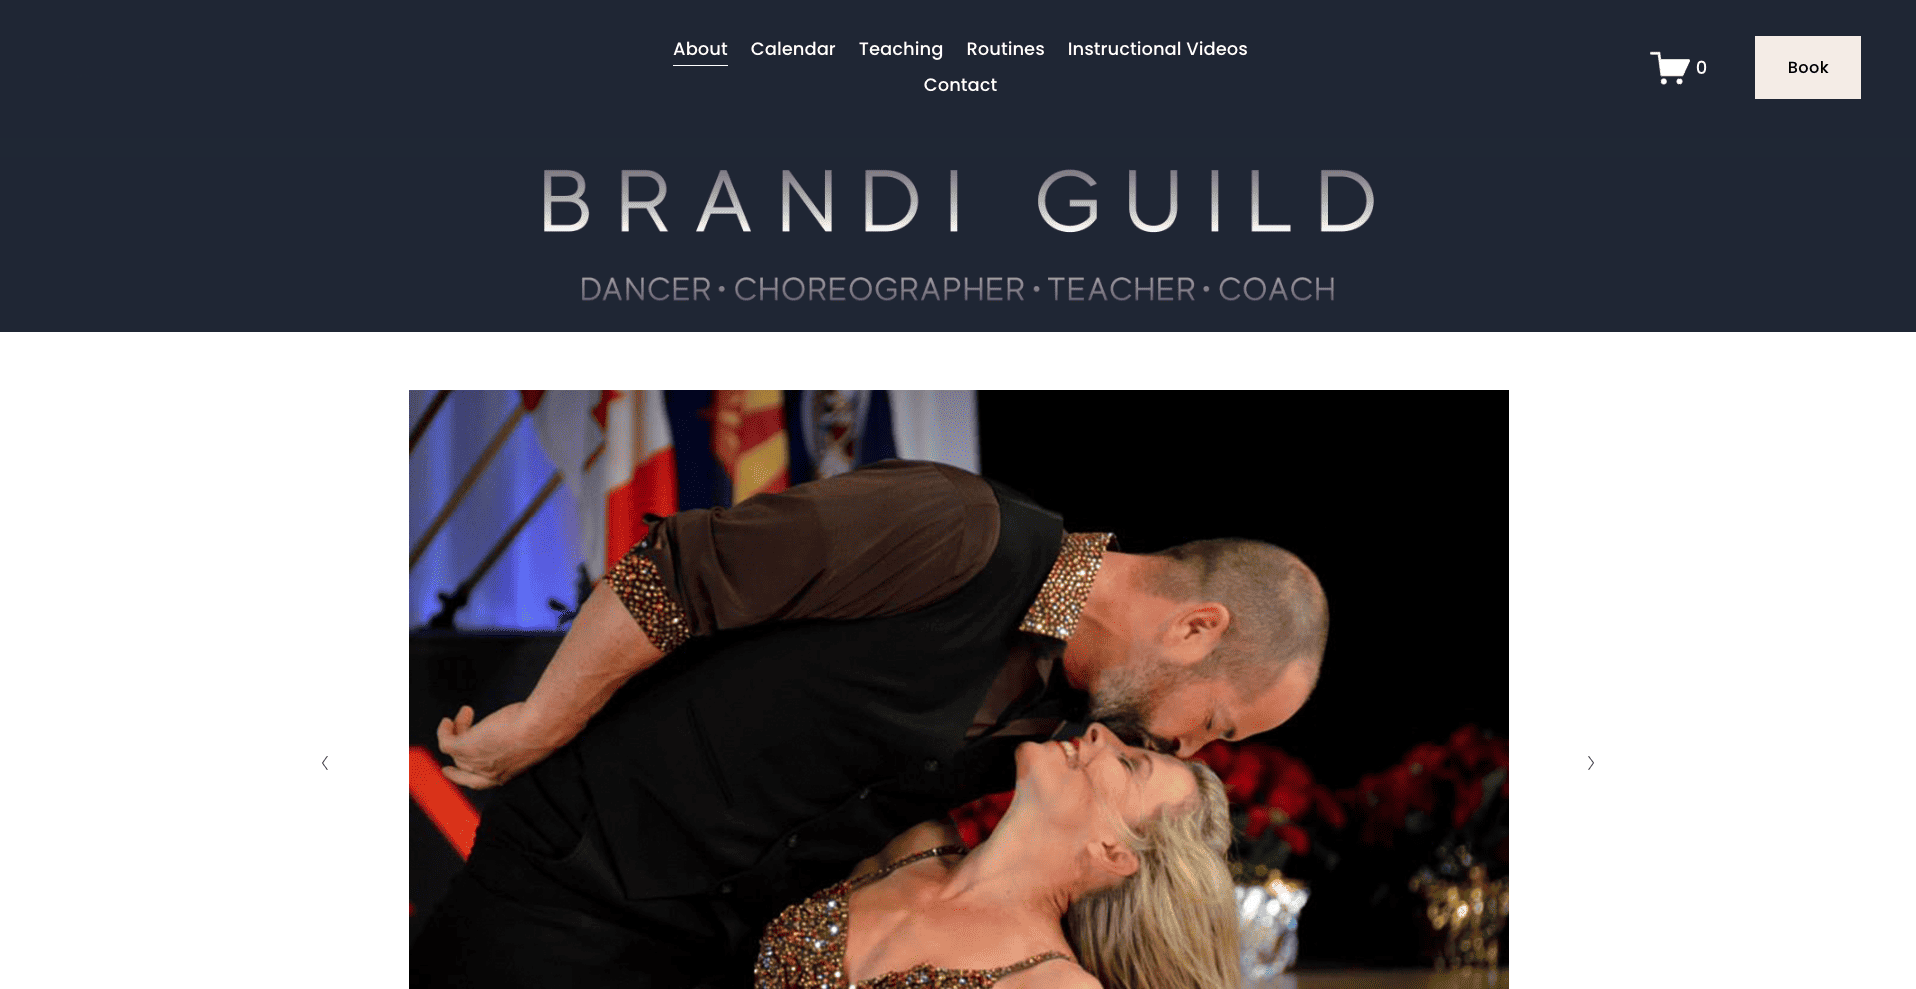 brandi guild home page image